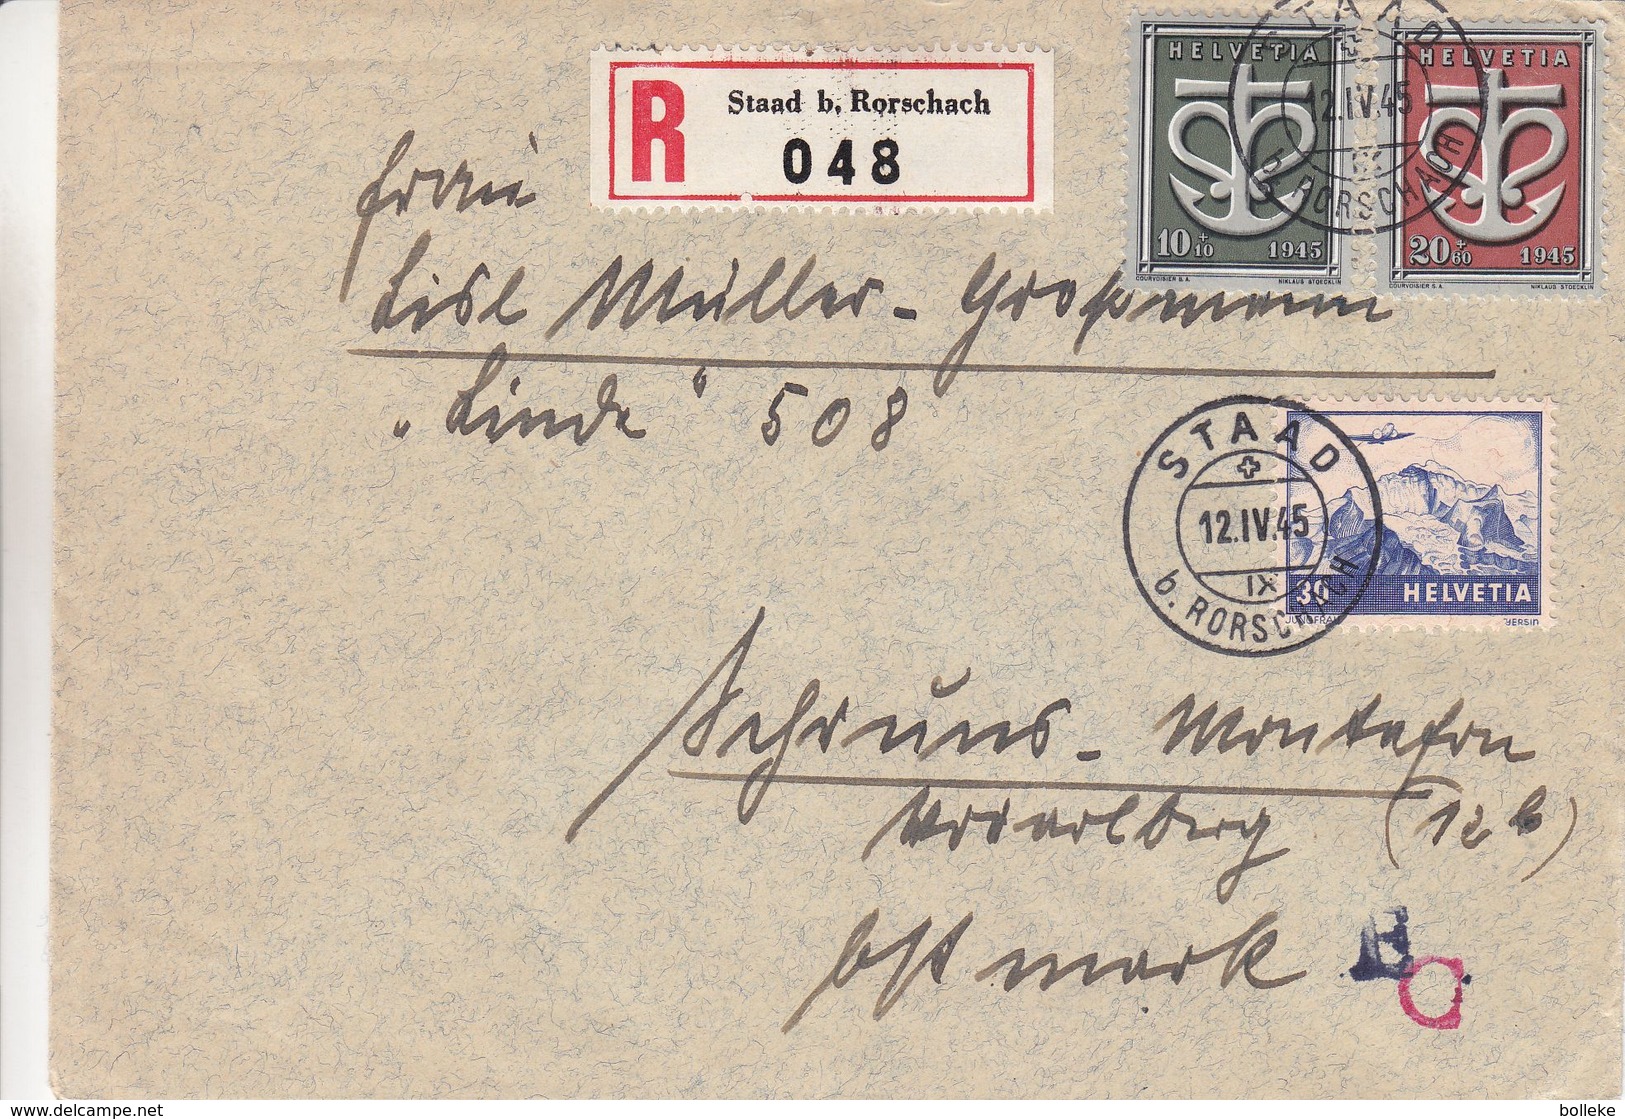 Suisse - Lettre Recom De 1945 - Oblit Staad - - Lettres & Documents